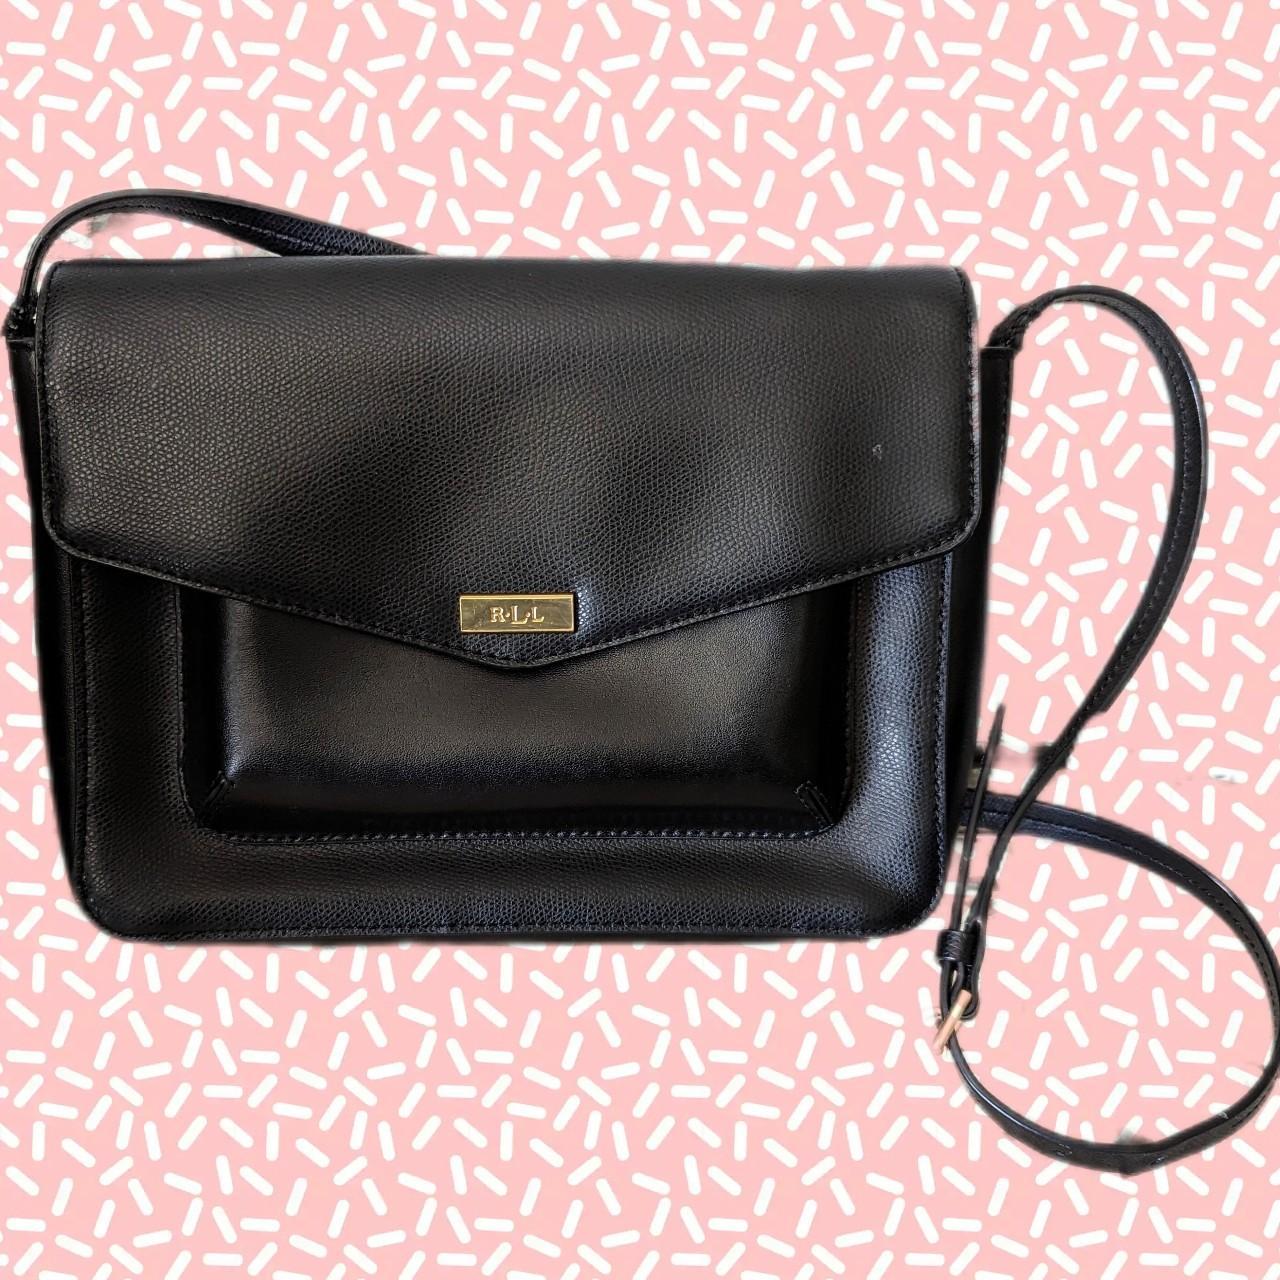 Ralph Lauren Bags… thoughts??? : r/handbags